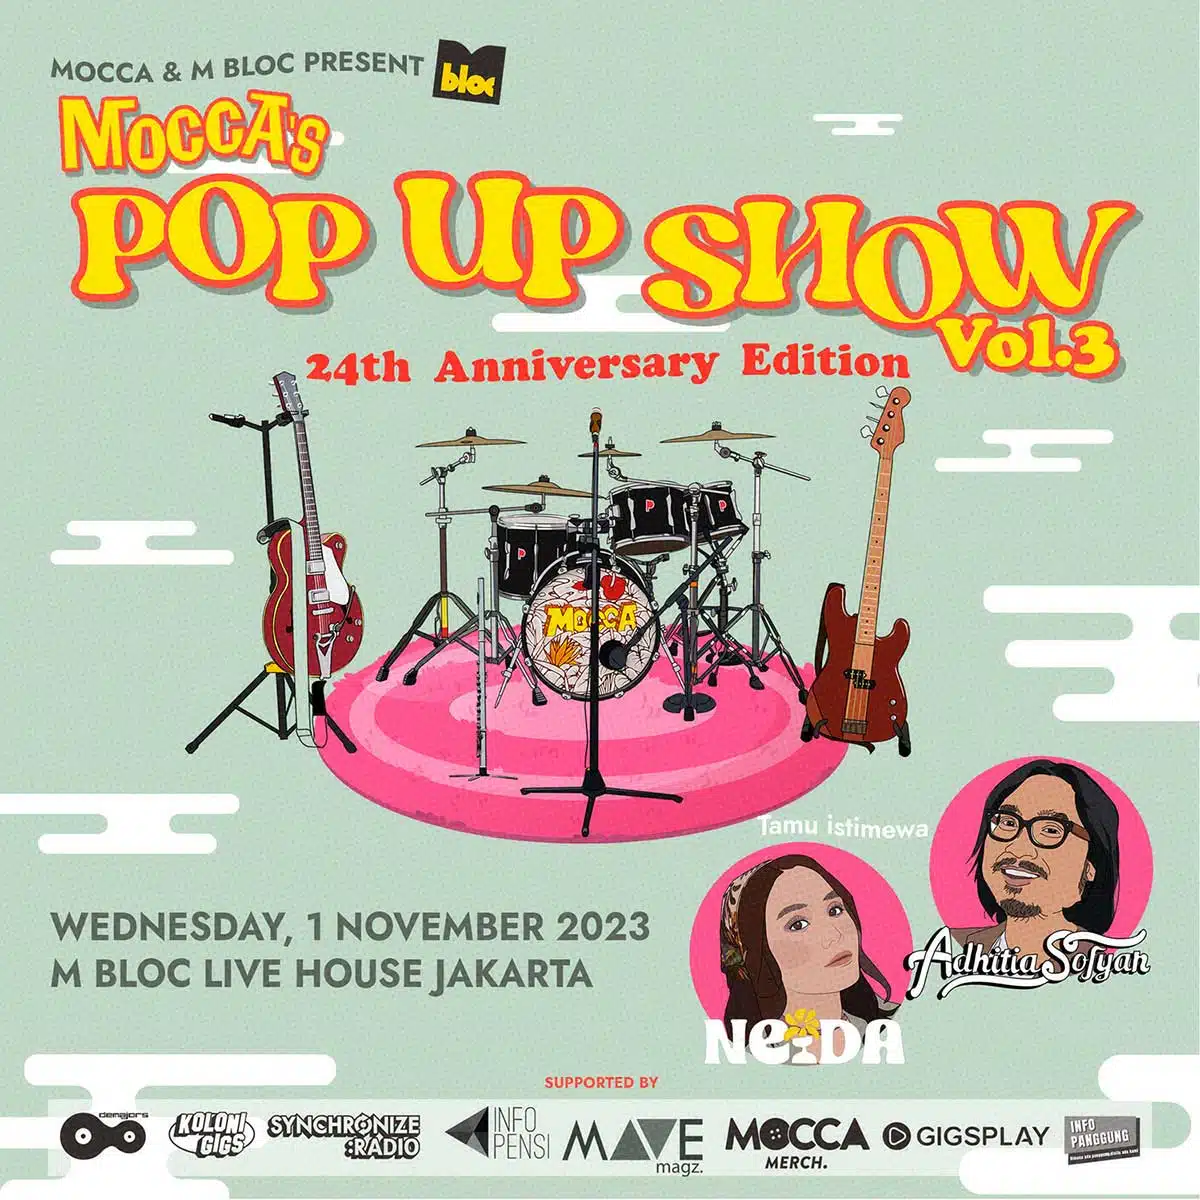 Pop Up Show Vol.3